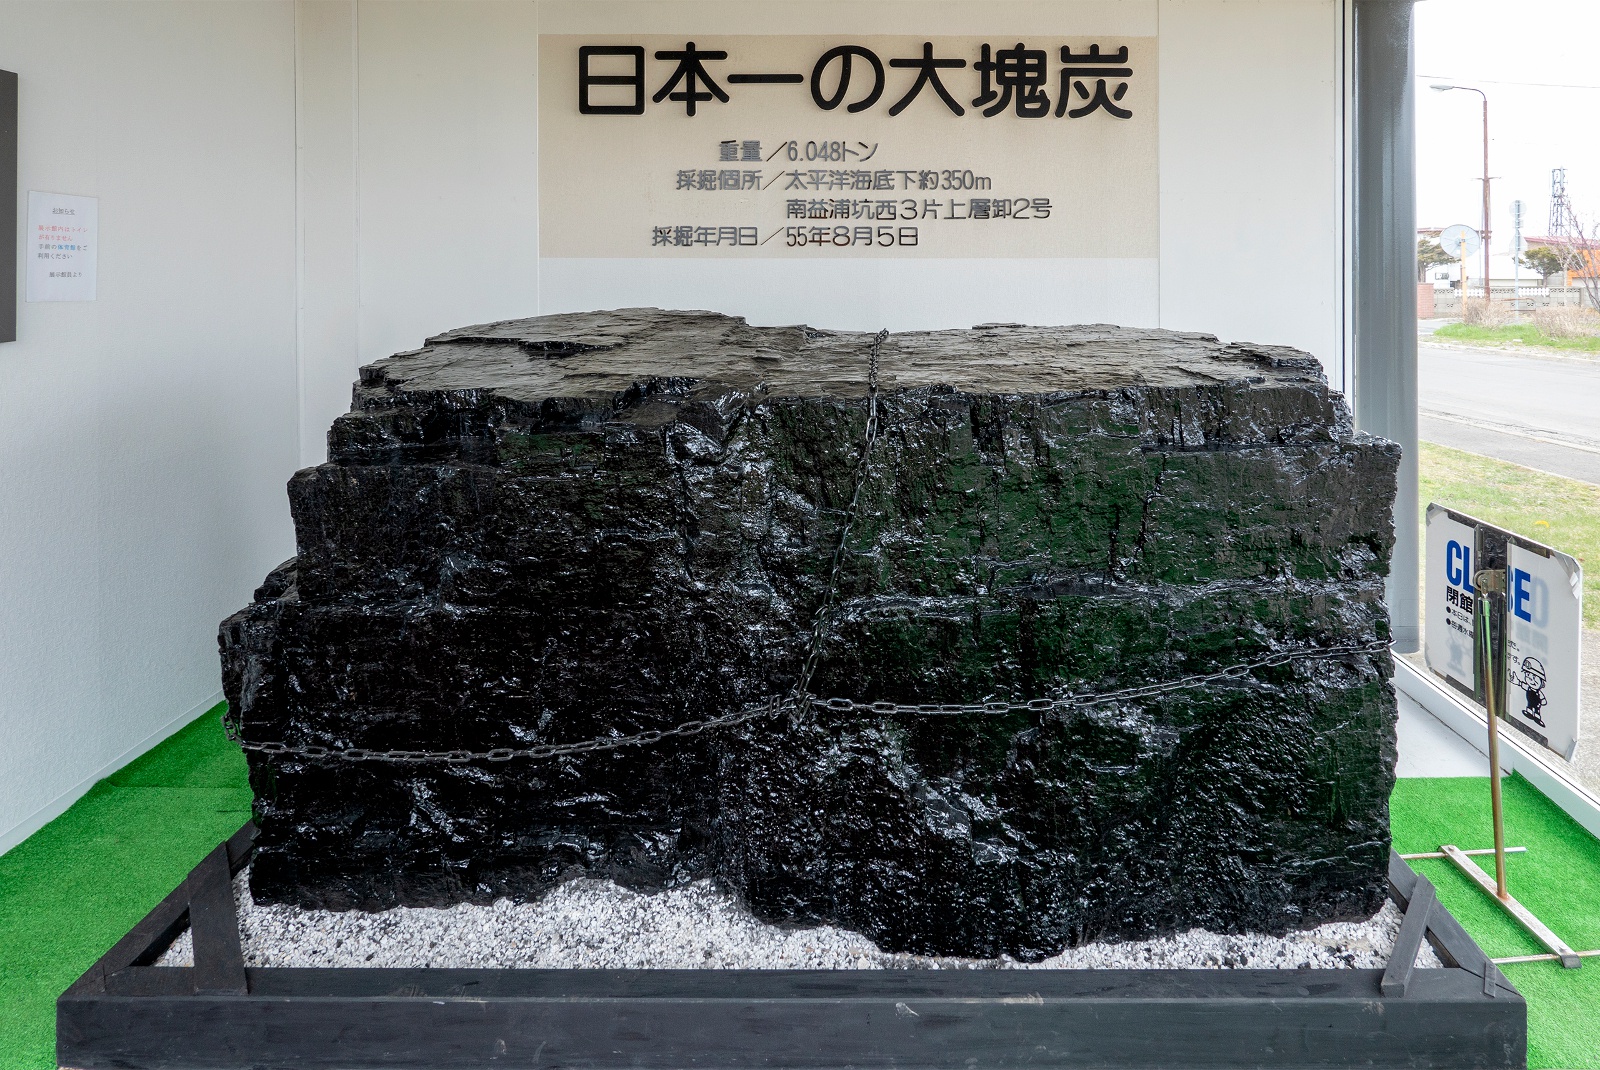 日本一の大塊炭は圧巻！釧路「炭鉱展示館」で国内唯一の海底炭鉱を学ぶ